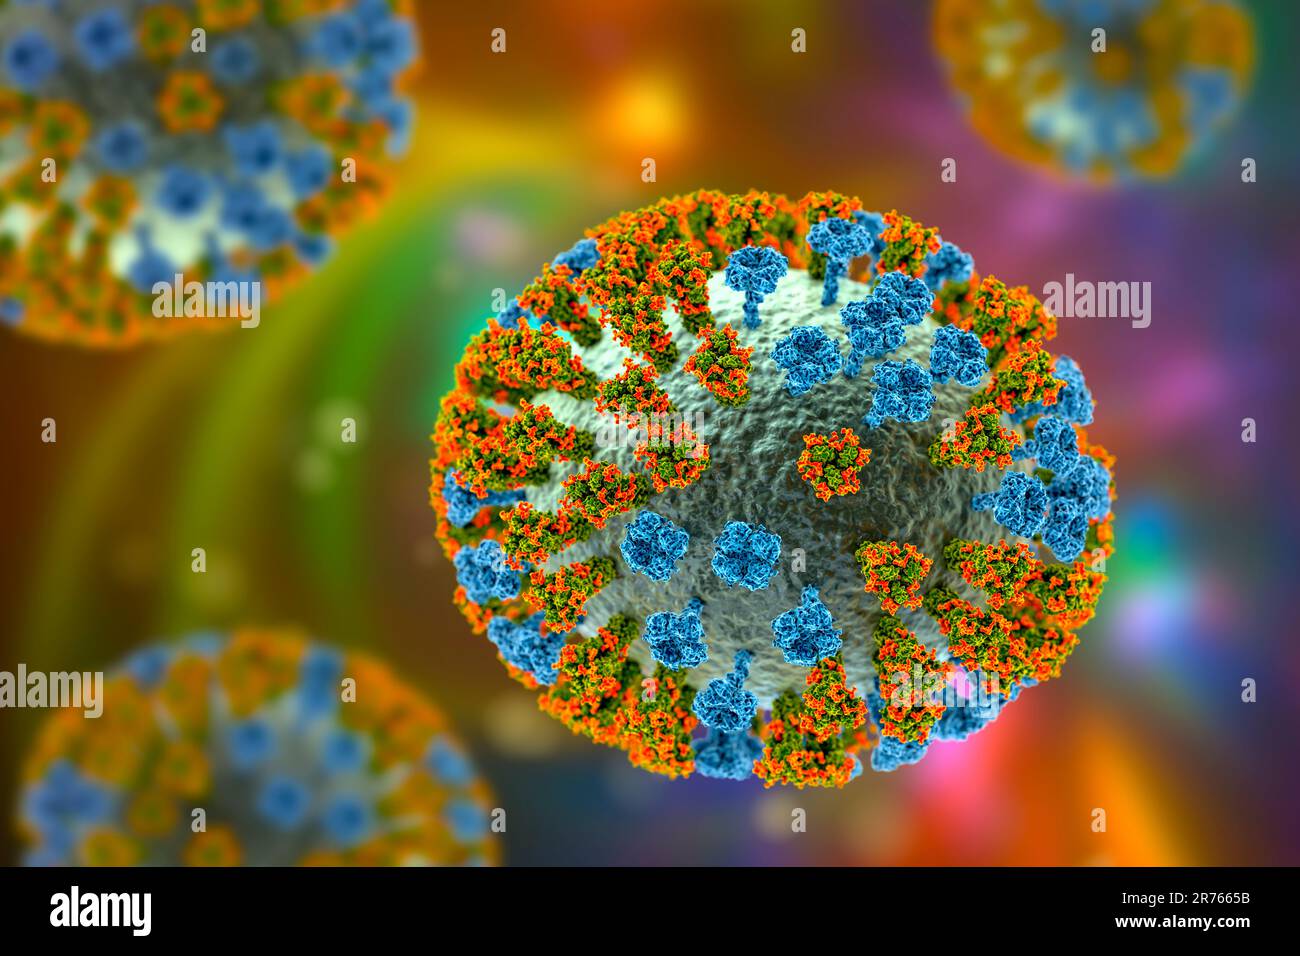 Virus influenzale. Illustrazione che mostra un virus influenzale con picchi di glicoproteina di superficie emagglutinina (ha, trimero) e neuraminidasi (NA, tetramero). Il g Foto Stock